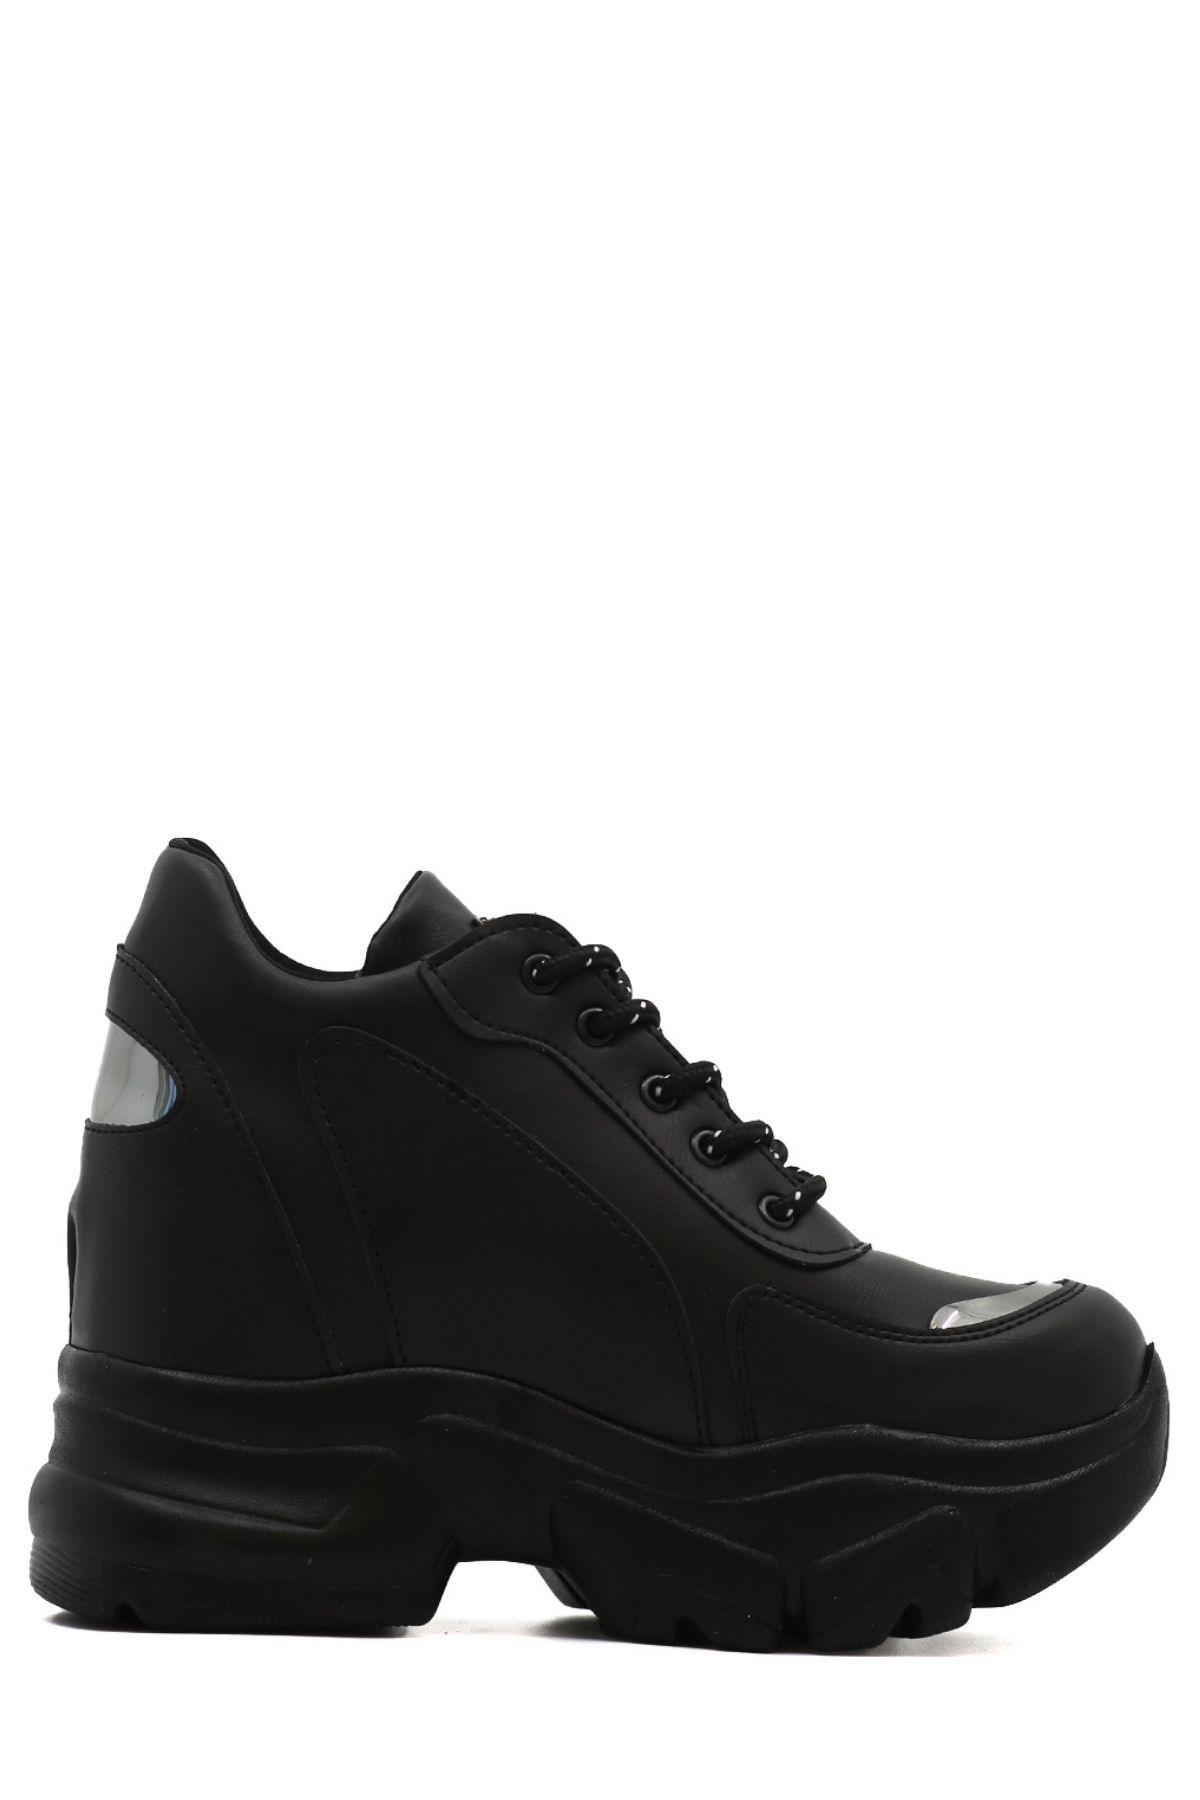 Blas 10 Cm Dolgu Topuk Yeni̇ Sezon Sneakers Spor Ayakkabi Siyah - Still  Durağı